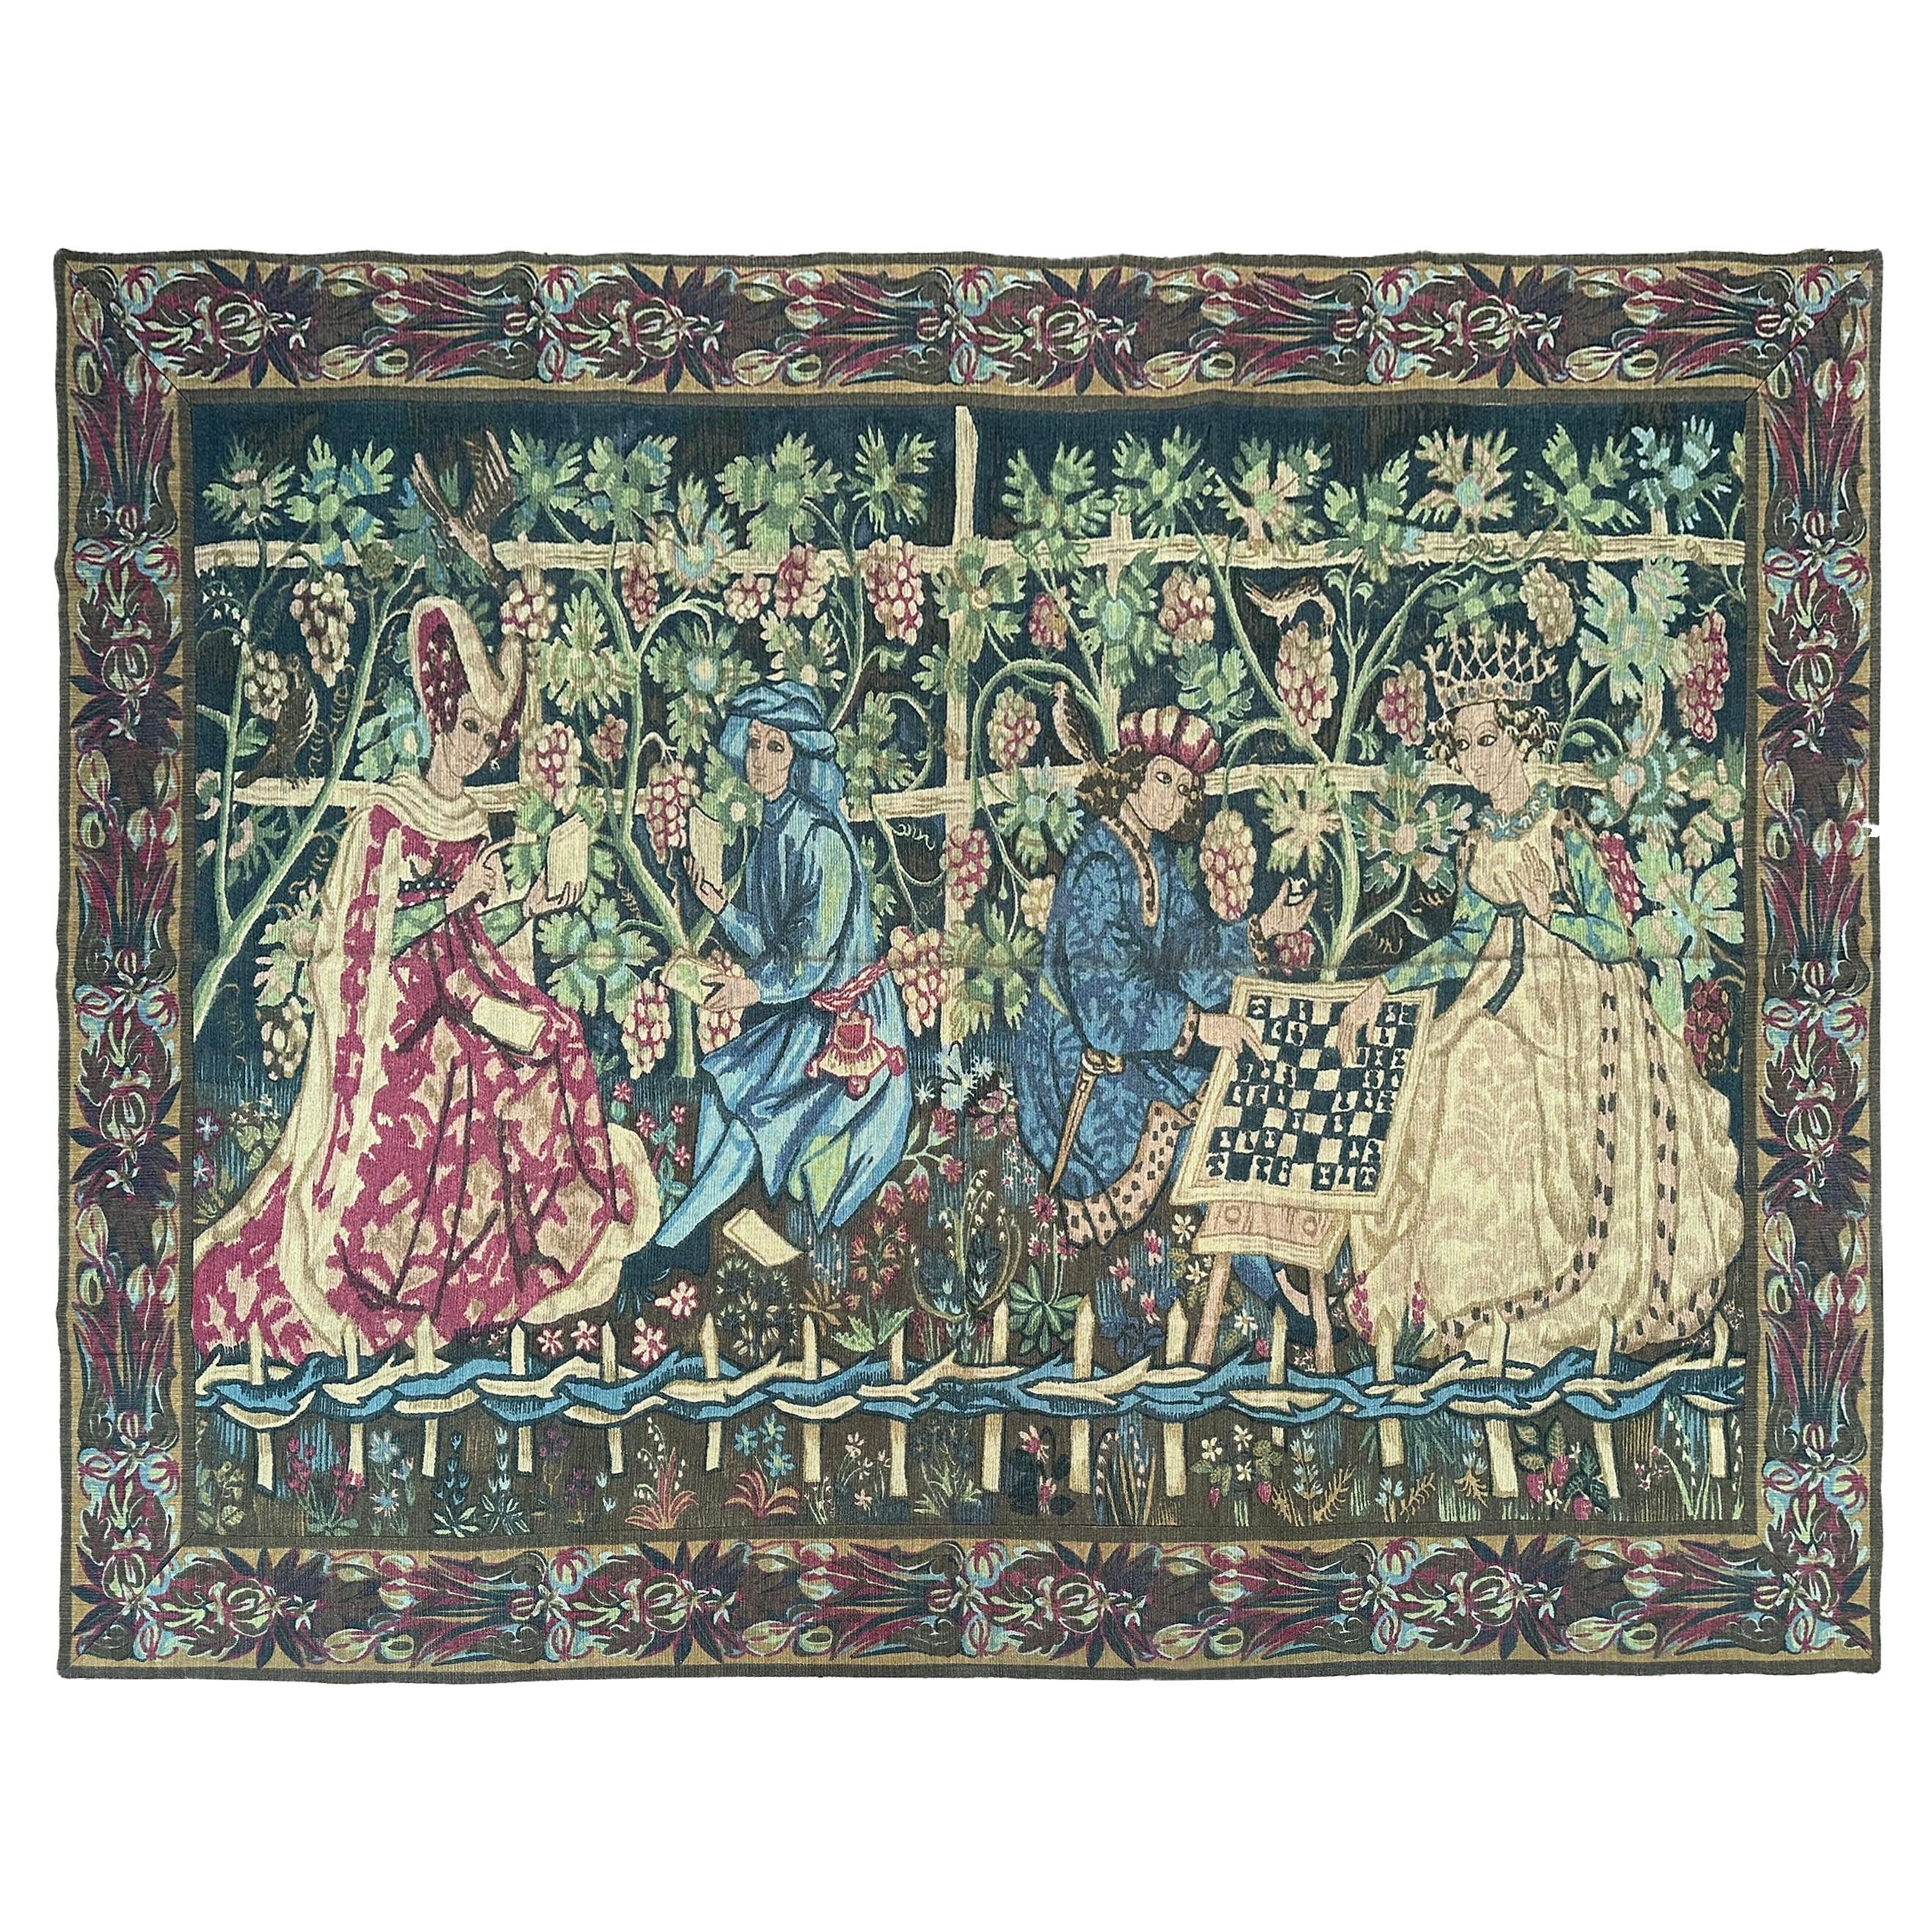 Antiker französischer Wandteppich Verdure Noblemen Royalty Verdure 5x9 158cm x 272cm 1920